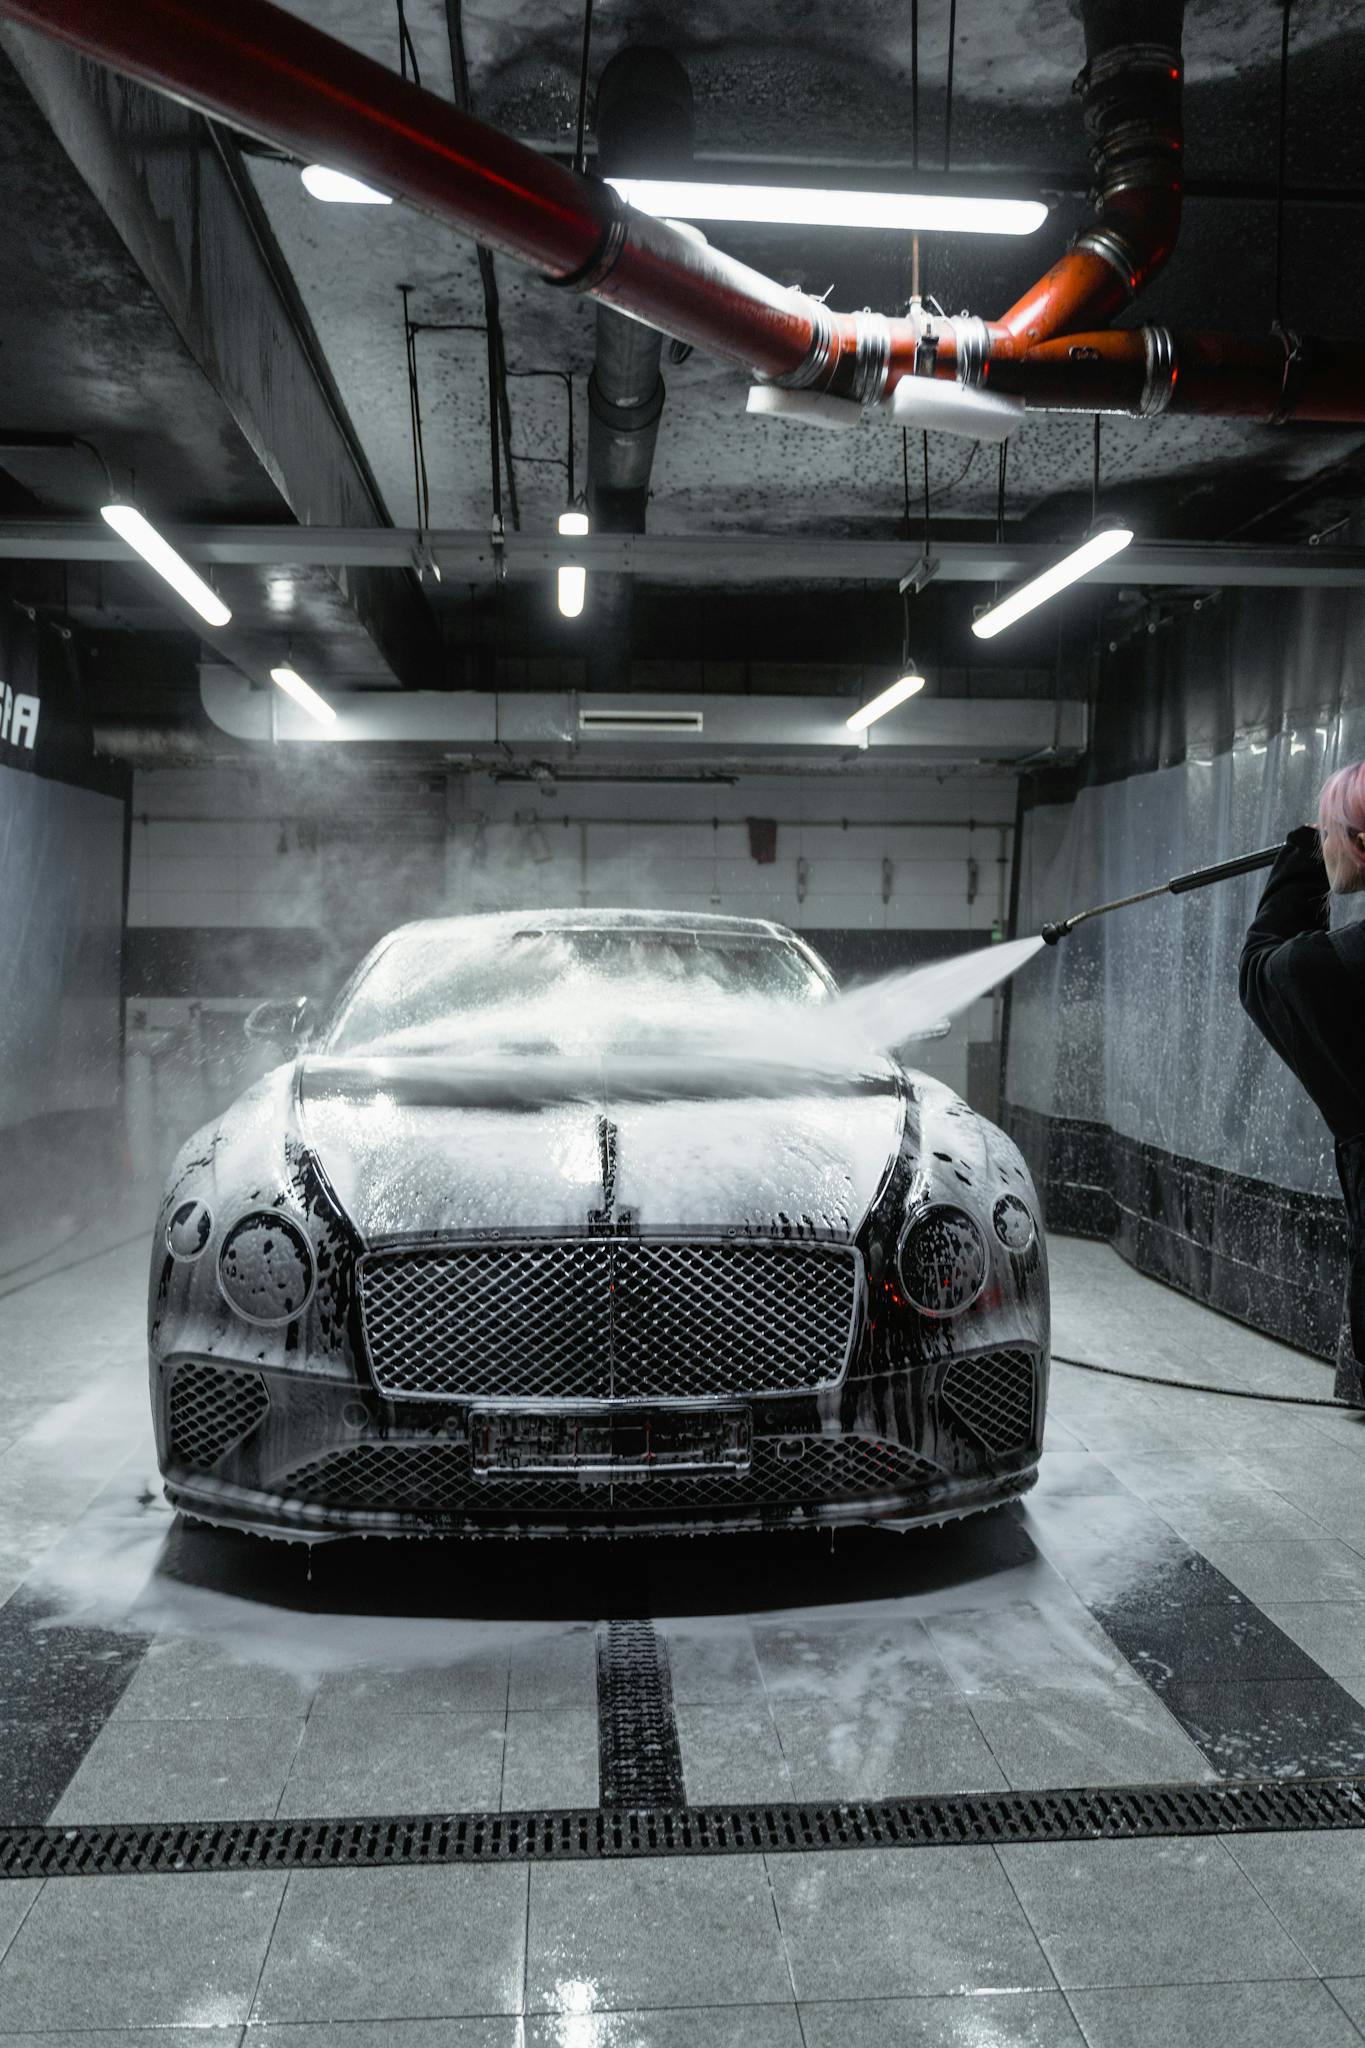 A Bentley Continental GT at a Car Wash